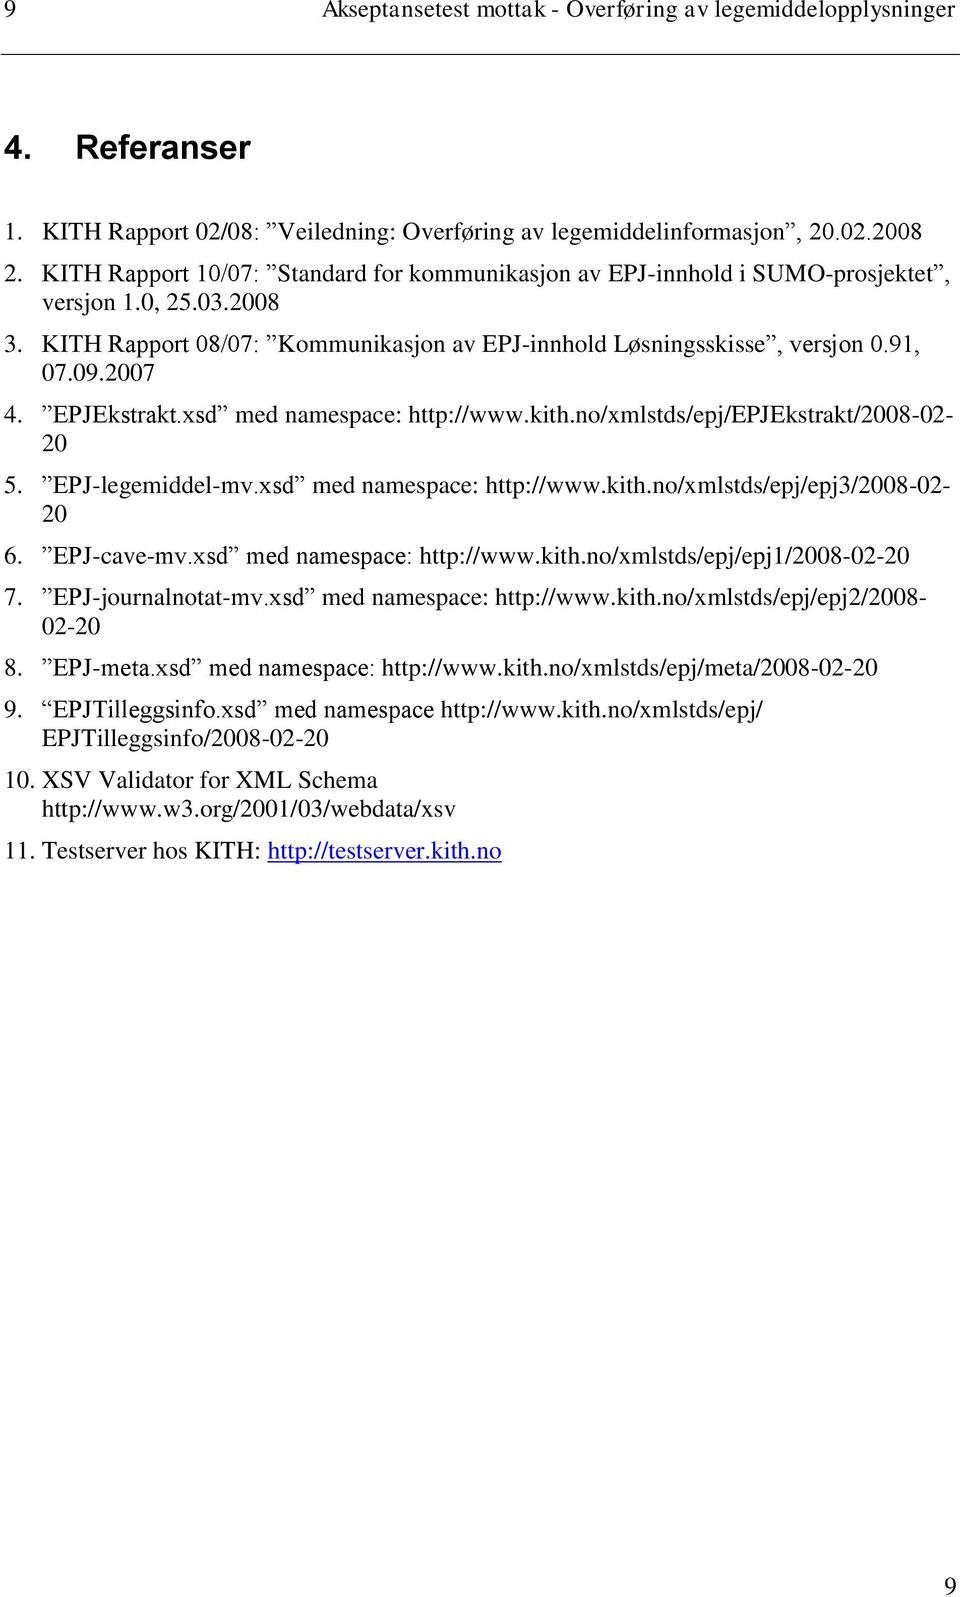 EPJEkstrakt.xsd med namespace: http://www.kith.no/xmlstds/epj/epjekstrakt/2008-02- 20 5. EPJ-legemiddel-mv.xsd med namespace: http://www.kith.no/xmlstds/epj/epj3/2008-02- 20 6. EPJ-cave-mv.